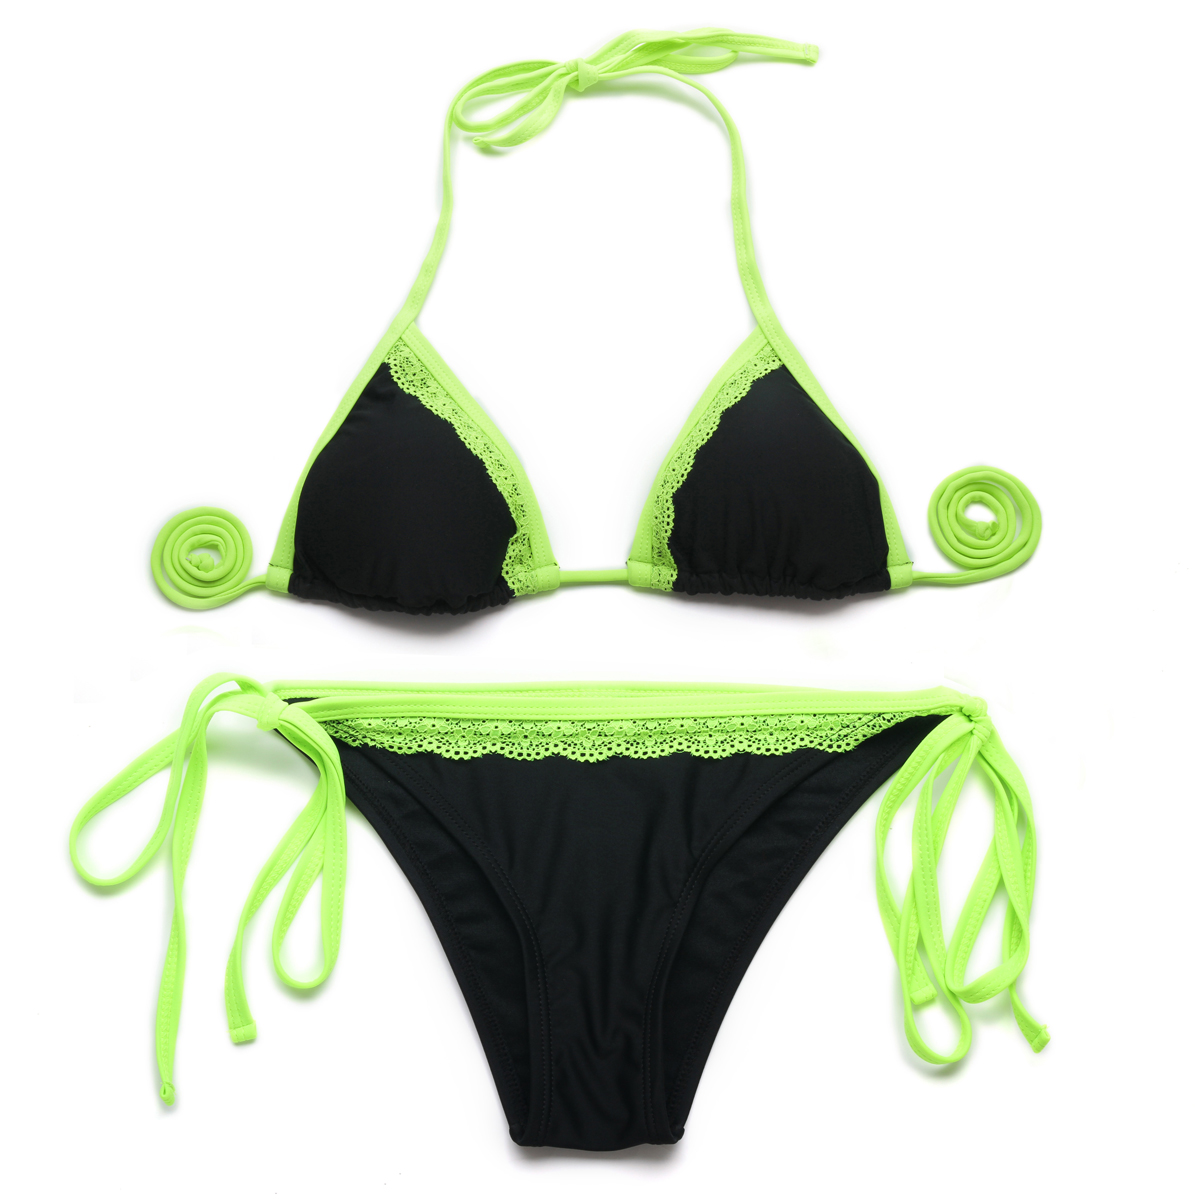 Verantwoordelijk persoon financiën Is 2015 Bikini Black + Green Lace Triangle Top With Classic Cut Bottom Bikini  Swimwear on Luulla